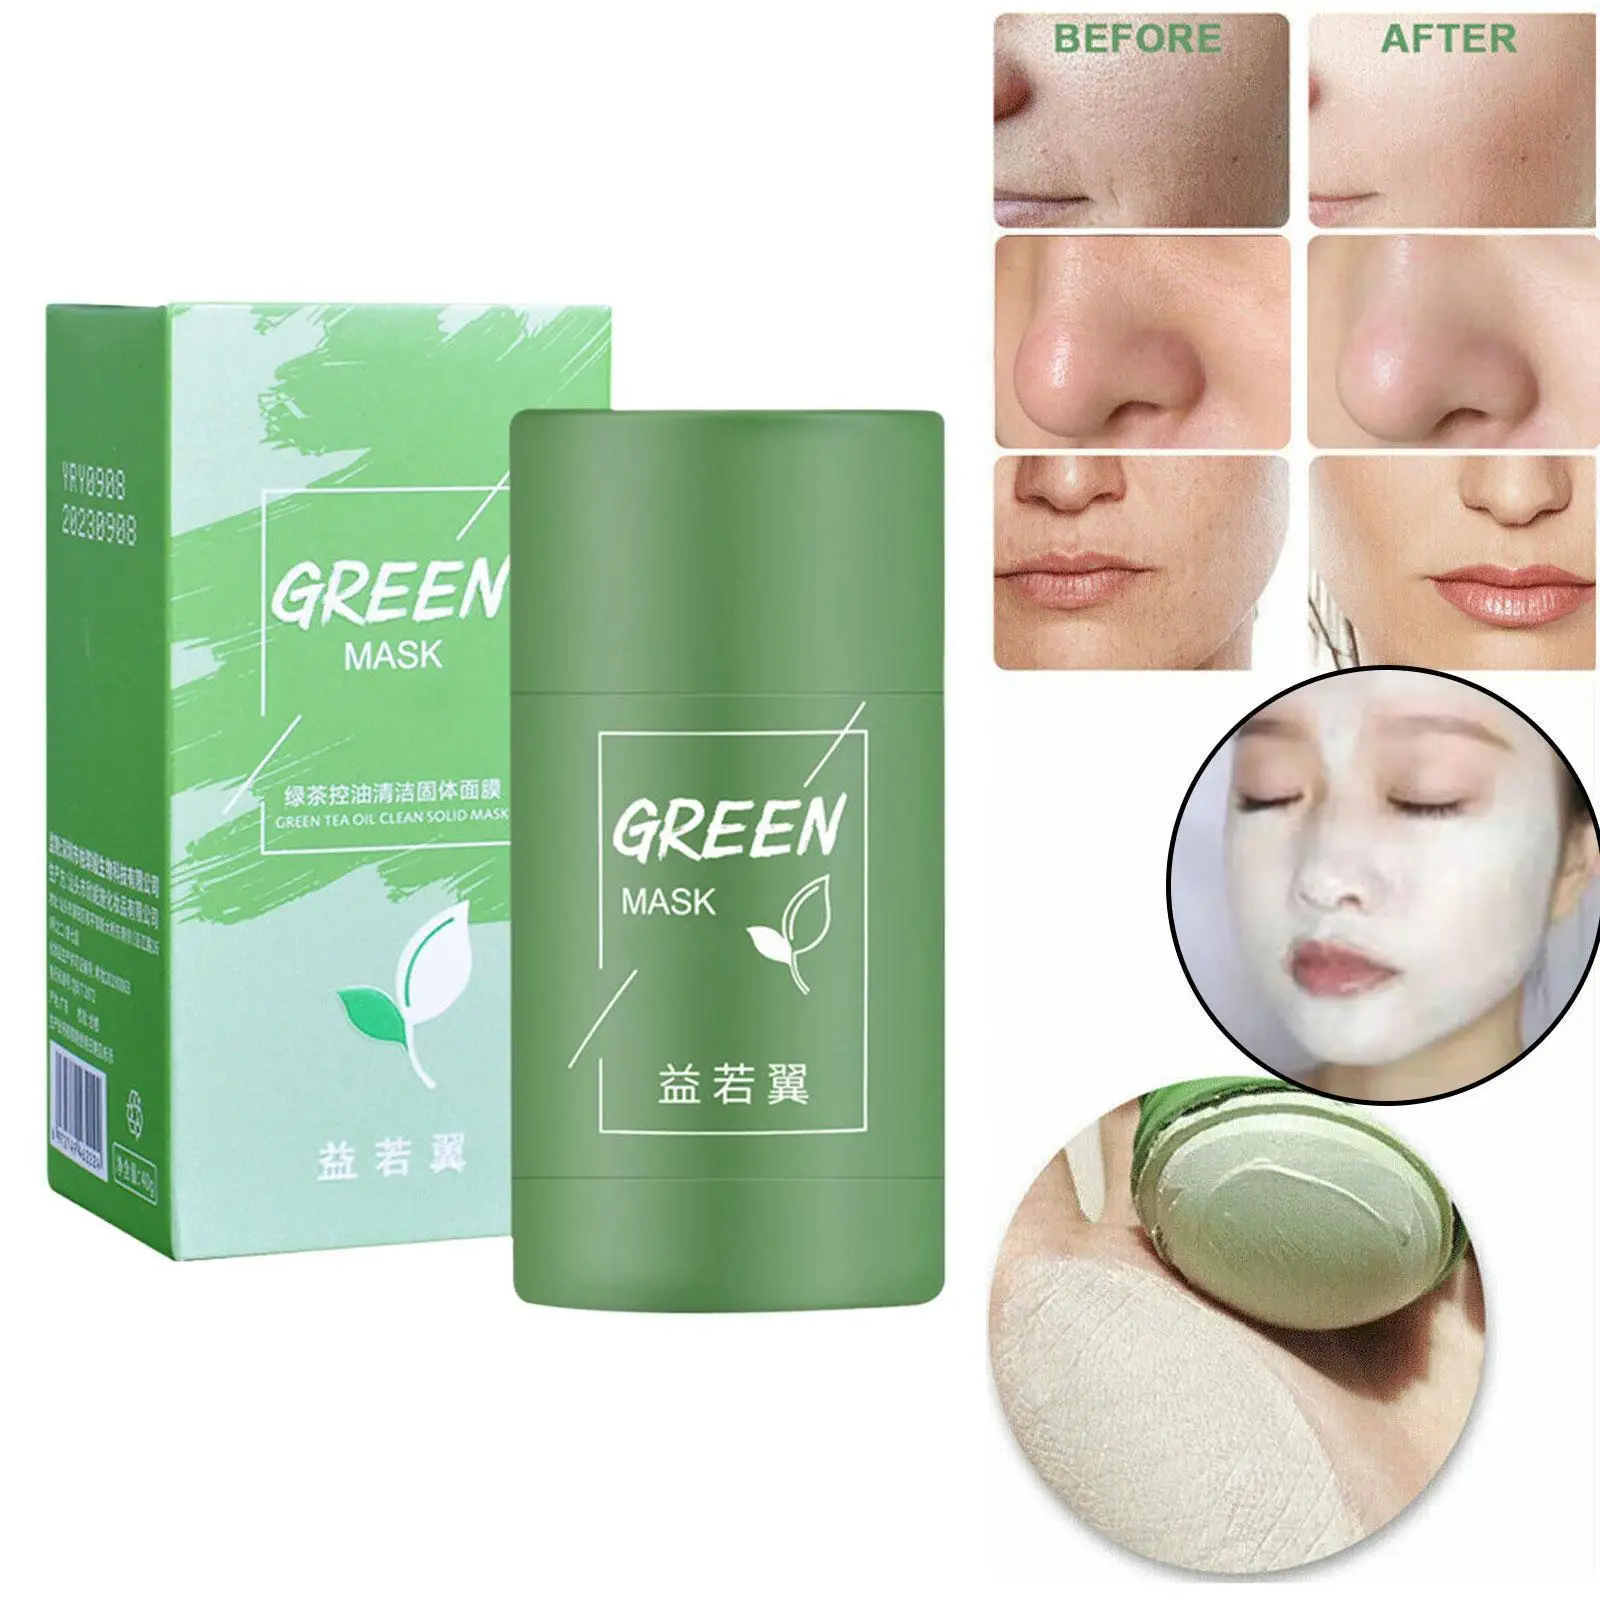 

Маска-палочка для глубокого очищения лица, маска для очистки лица, зеленое масло для лечения кожи, маска для контроля, увлажняющий уход за лицом Acn A8X9